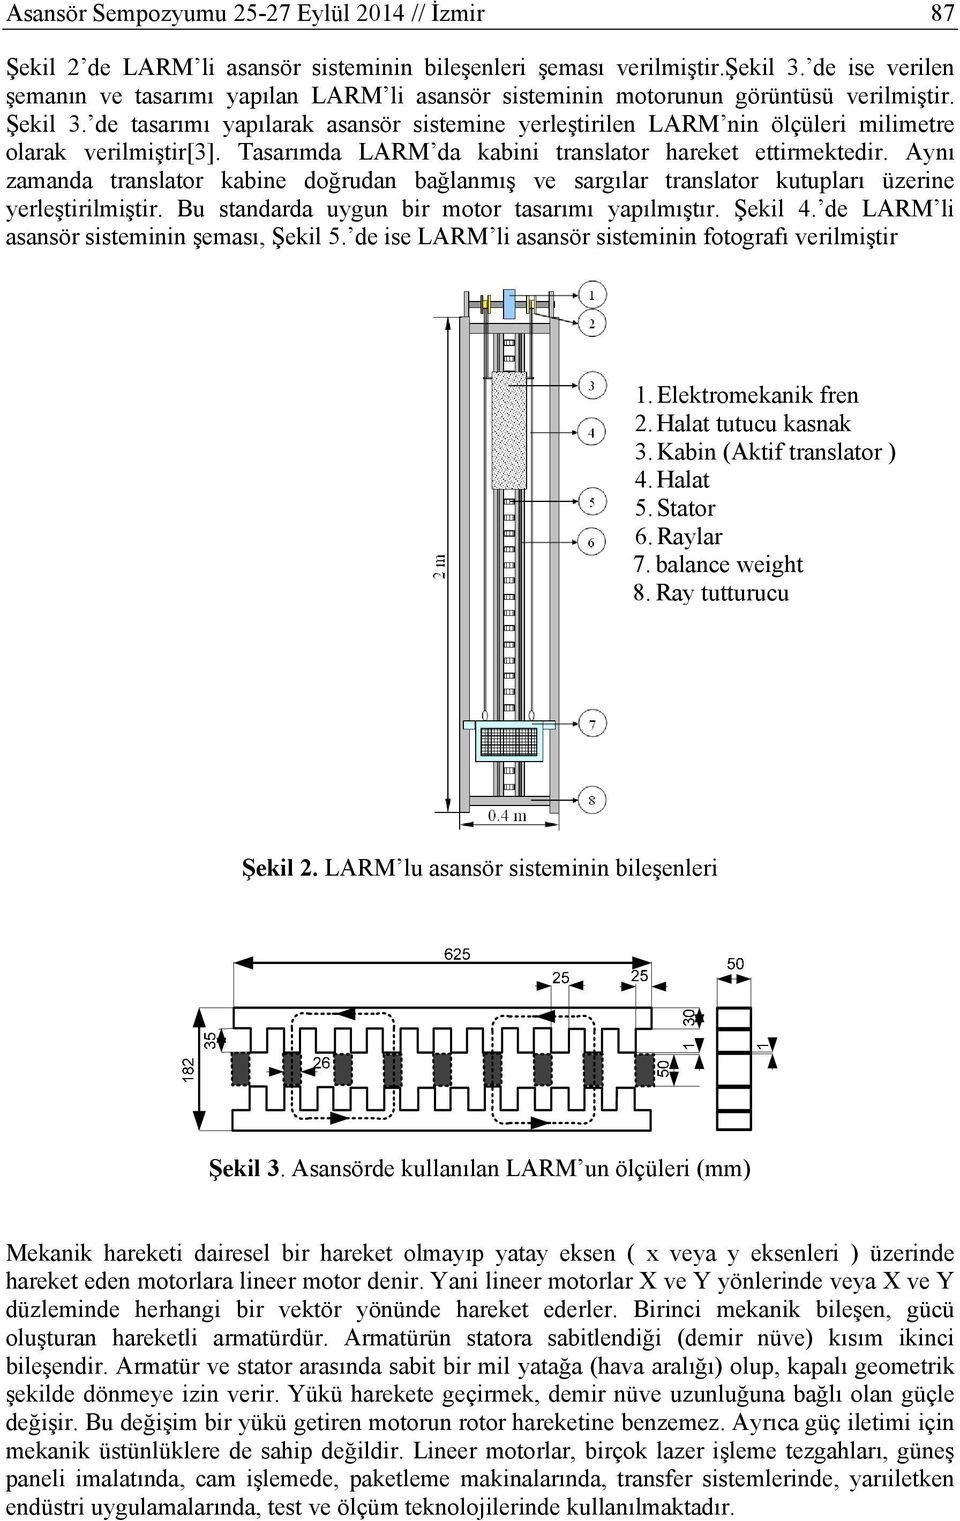 de tasarımı yapılarak asansör sistemine yerleştirilen LARM nin ölçüleri milimetre olarak verilmiştir[3]. Tasarımda LARM da kabini translator hareket ettirmektedir.